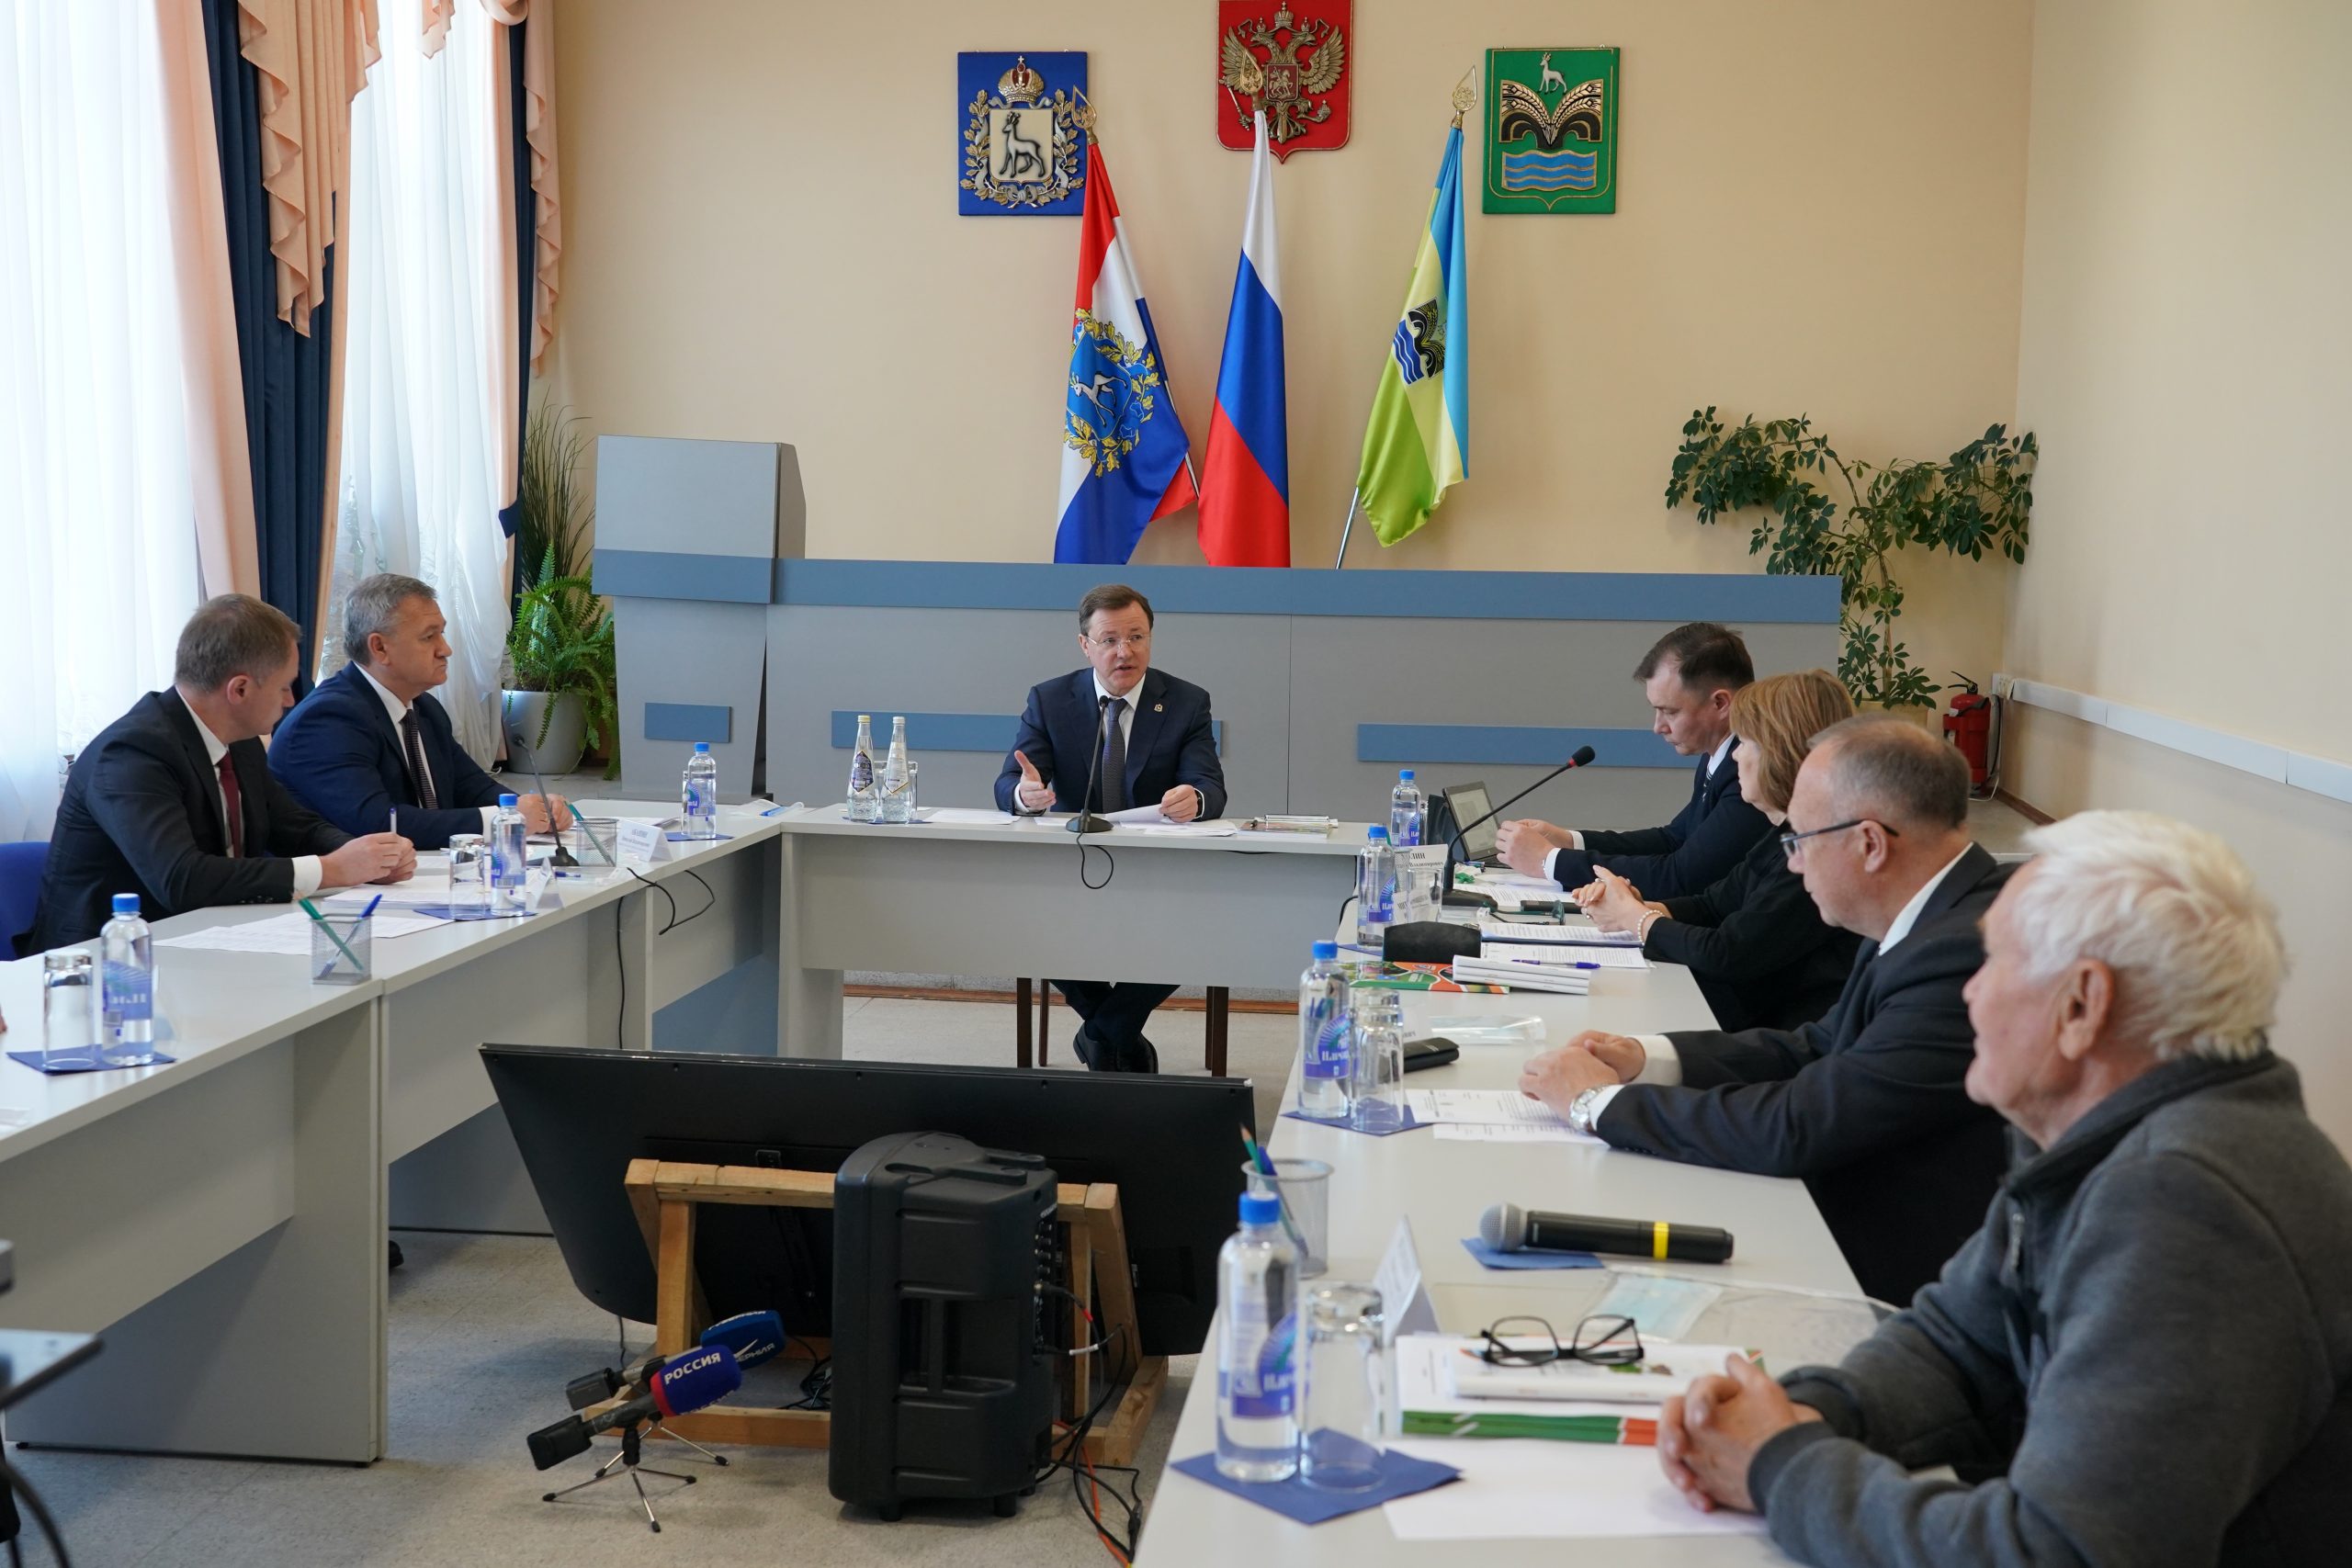 Дмитрий Азаров провел совещание с представителями садово-дачных товариществ региона